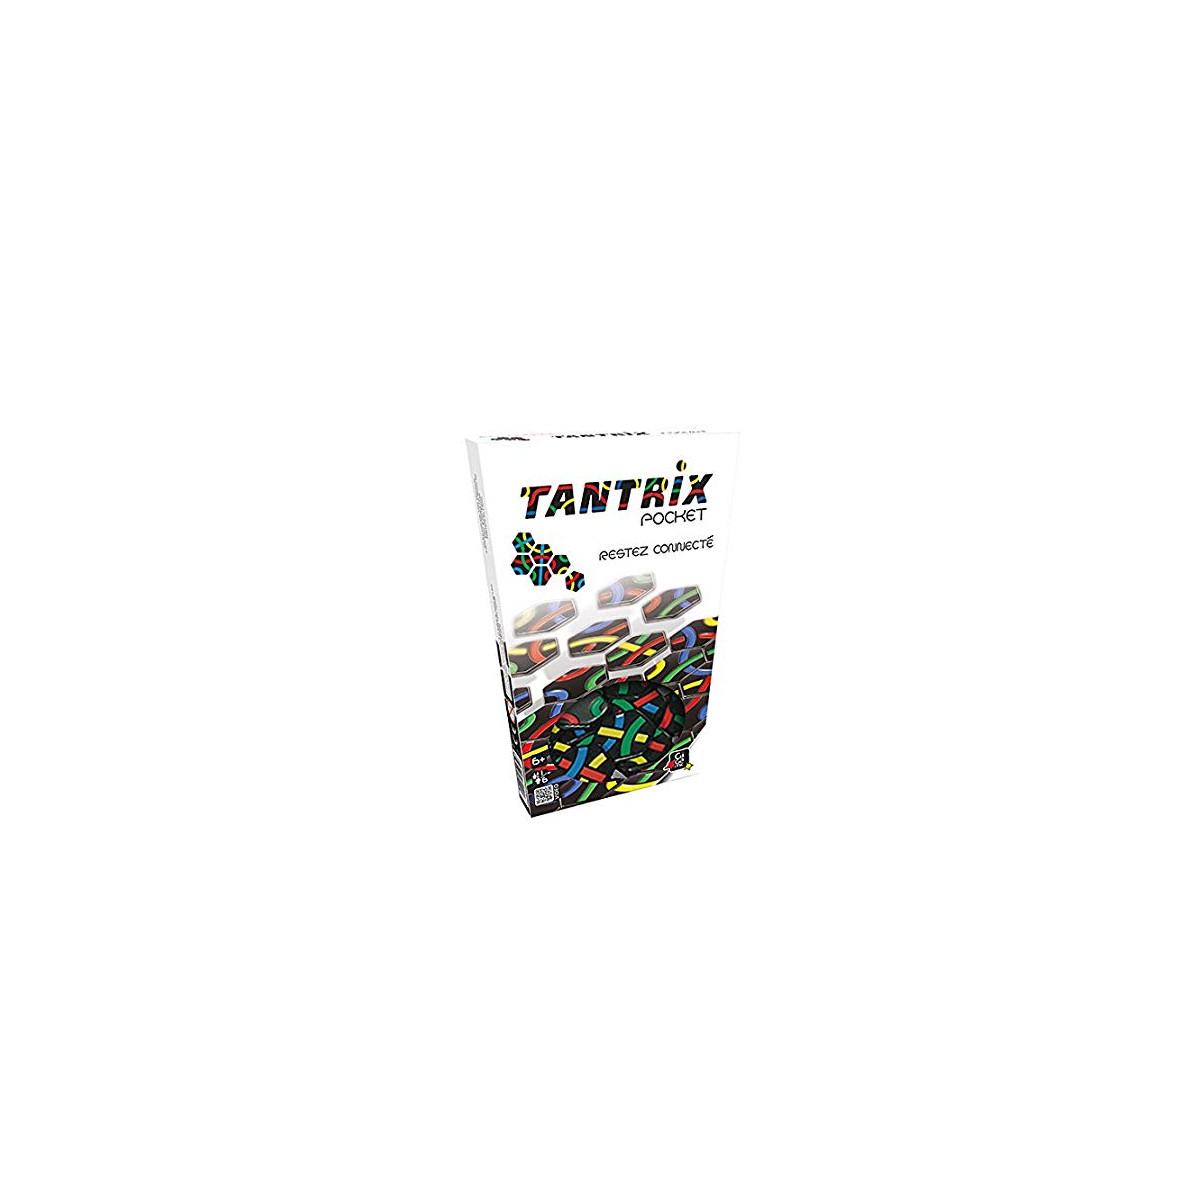 Tantrix - jeu de société - puzzle type casse-tête - stratégie et